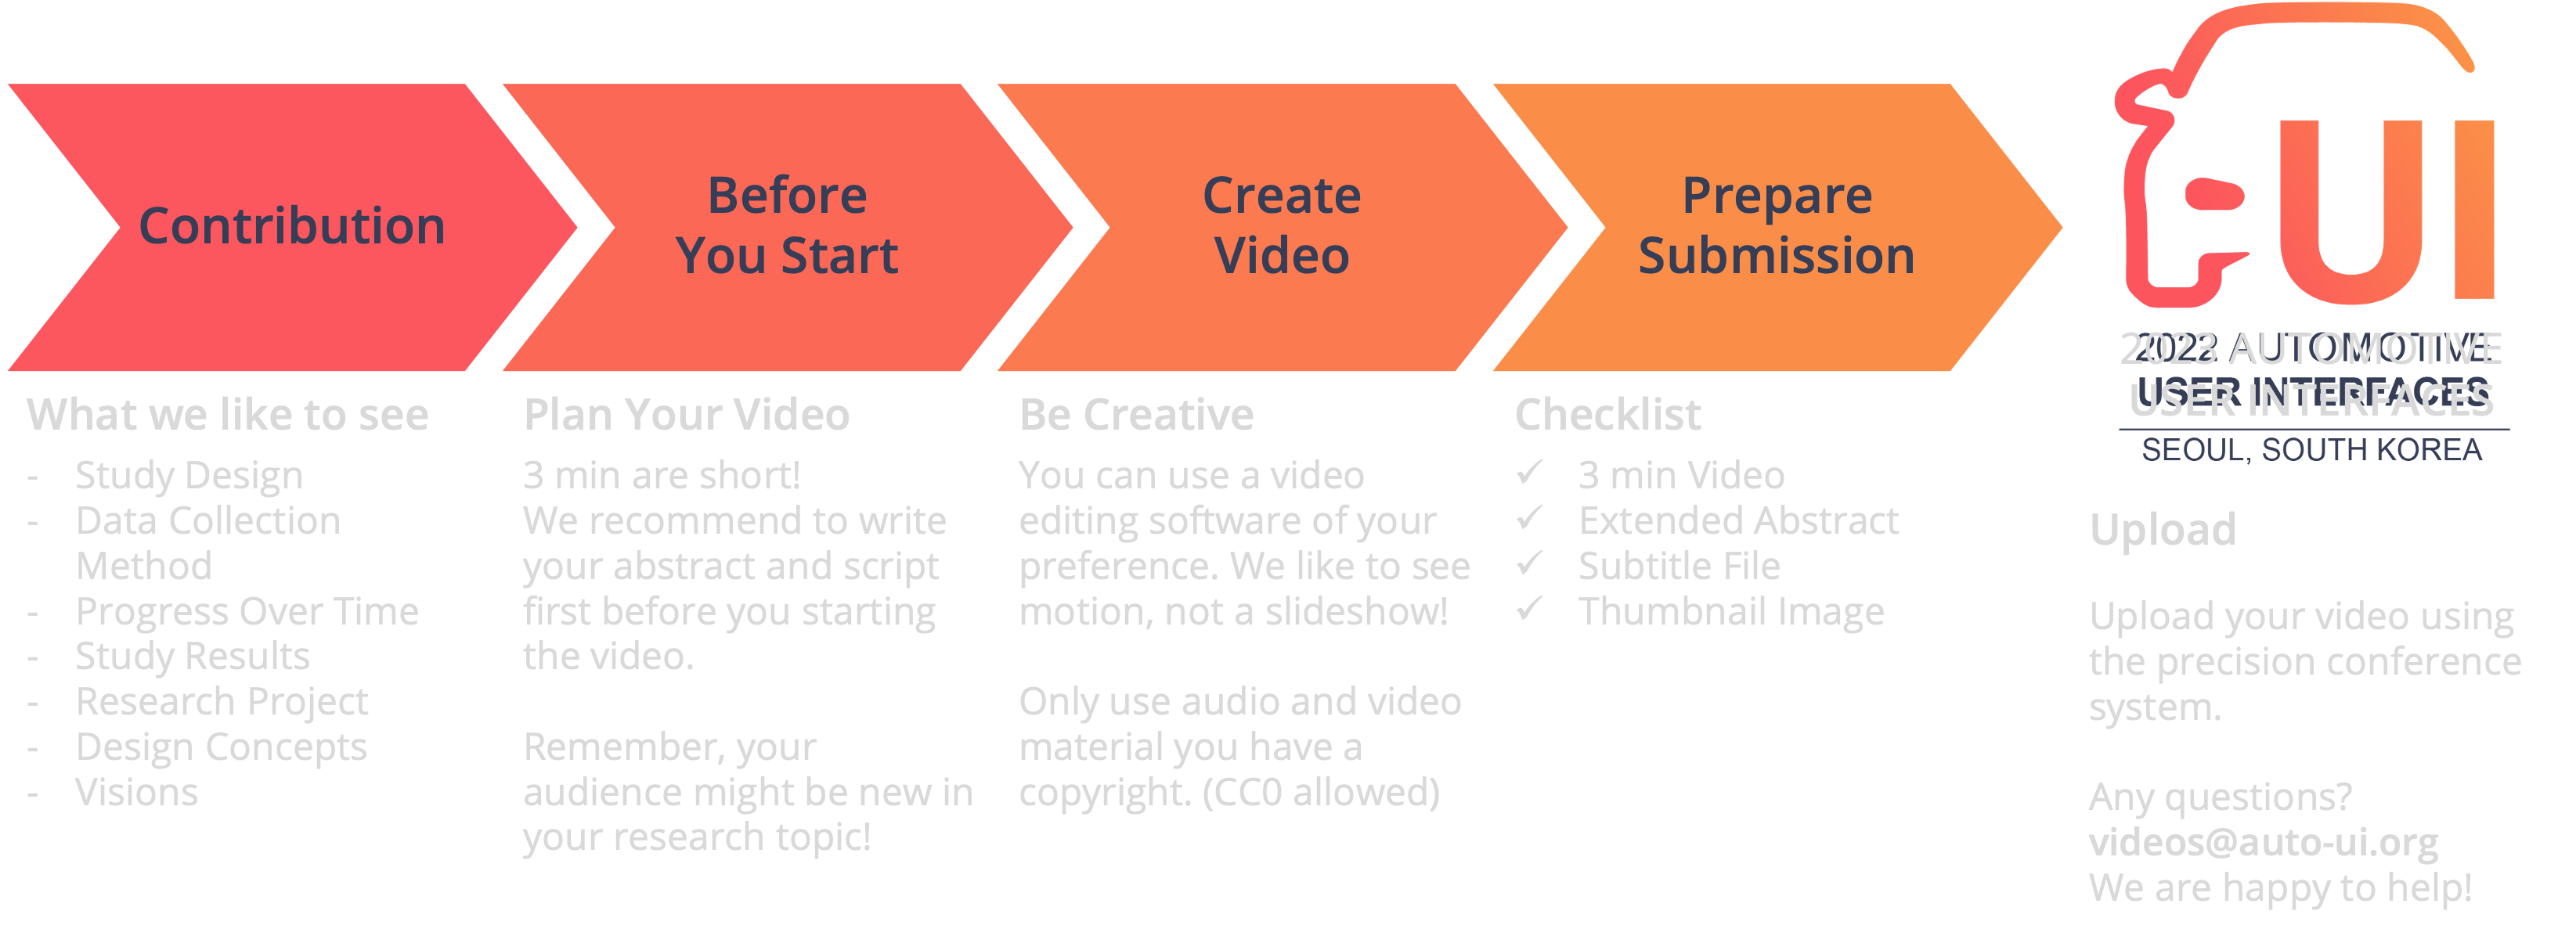 Video Process